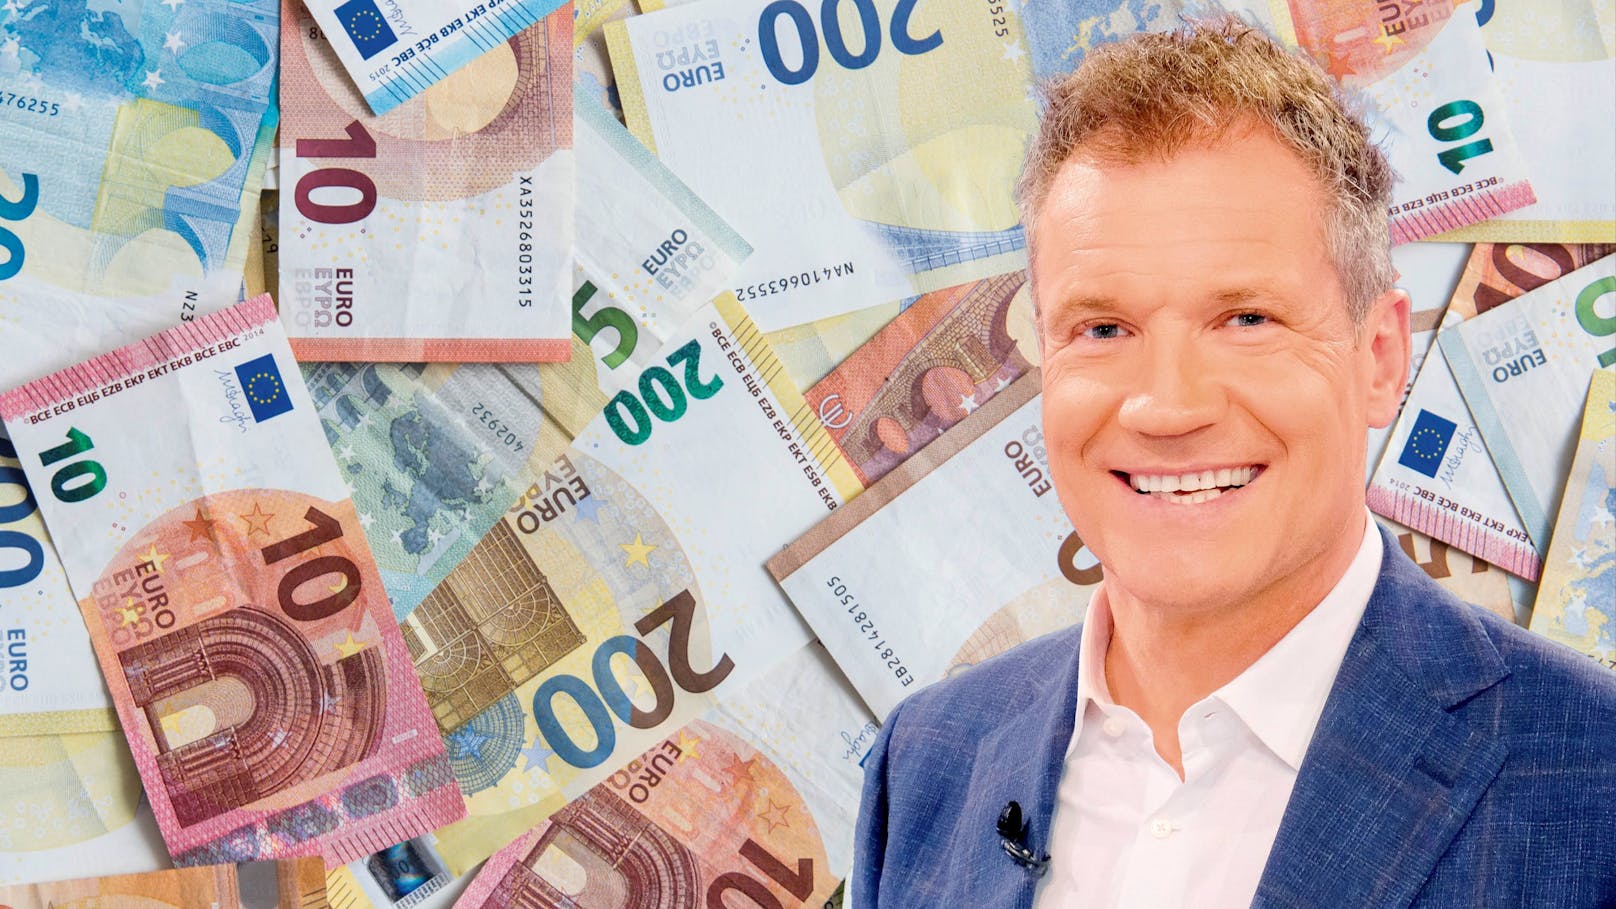 Fake-Werbung mit Assinger – Mann verliert 130.000 Euro